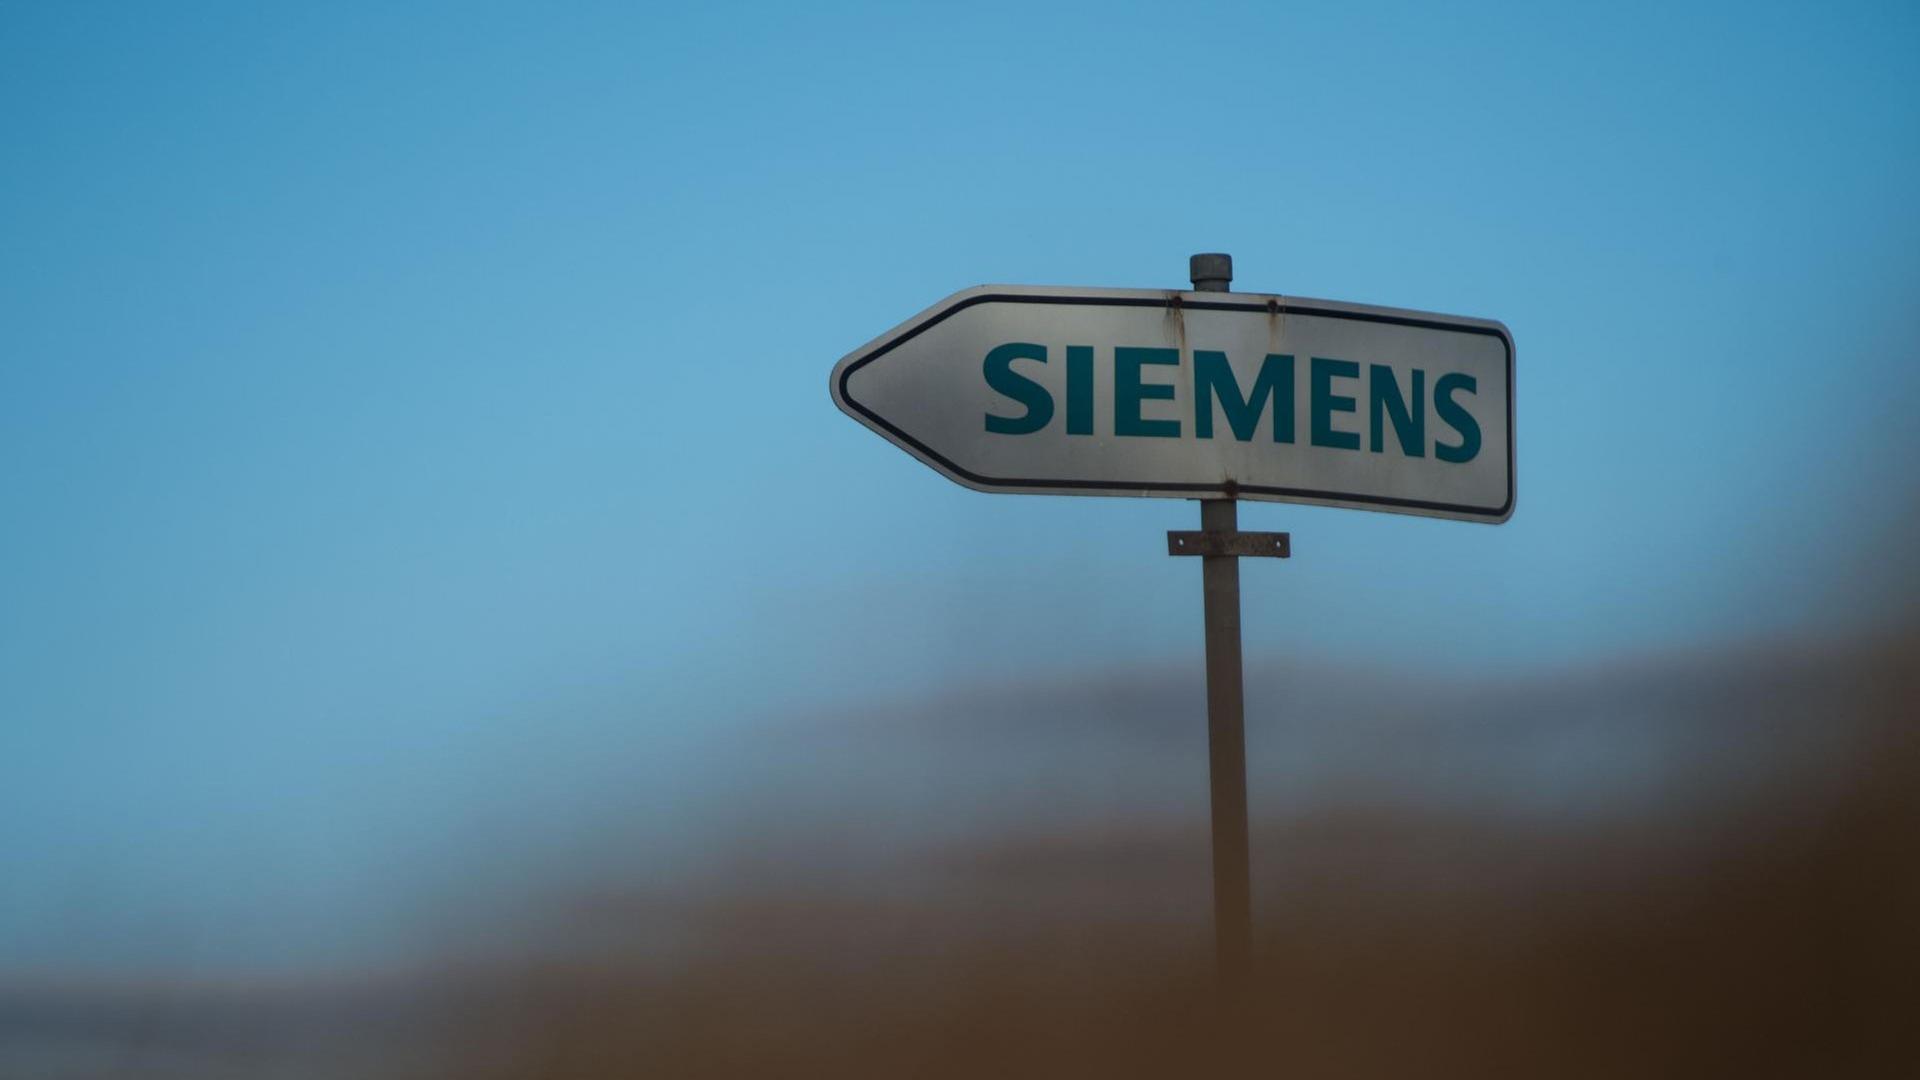 Ein Schild mit dem Logo der Firma Siemens weist ein naheliegendes Siemens-Werk hin. Die Firma hat bereits Erfahrung mit Unternehmensabspaltungen